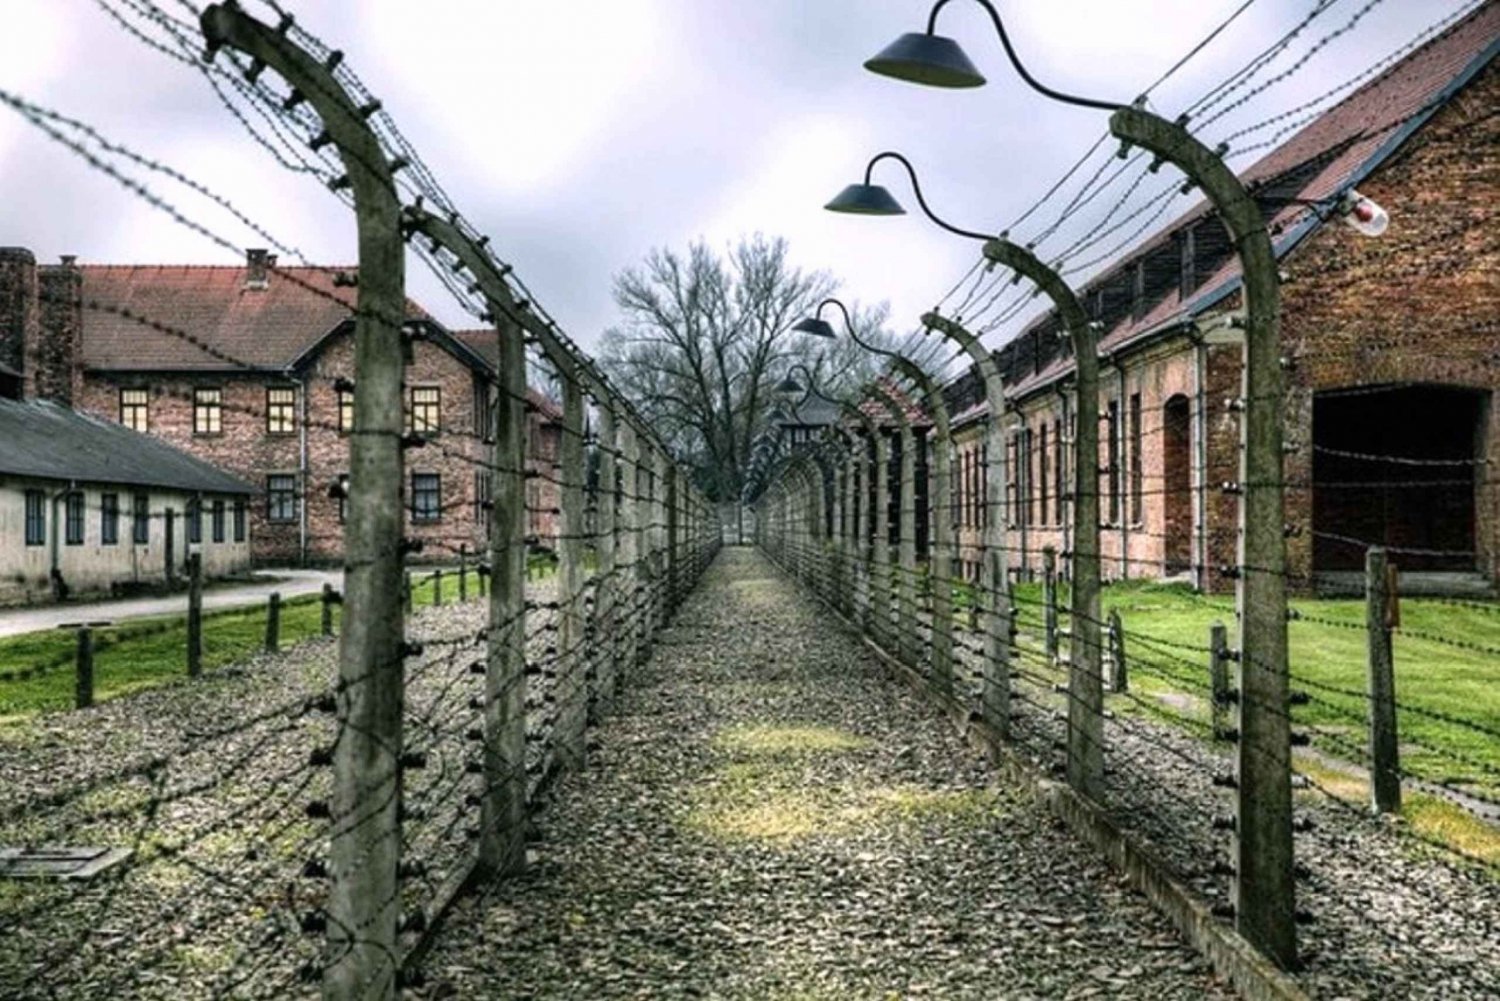 Depuis Cracovie : Visite guidée d'Auschwitz-Birkenau en minibus